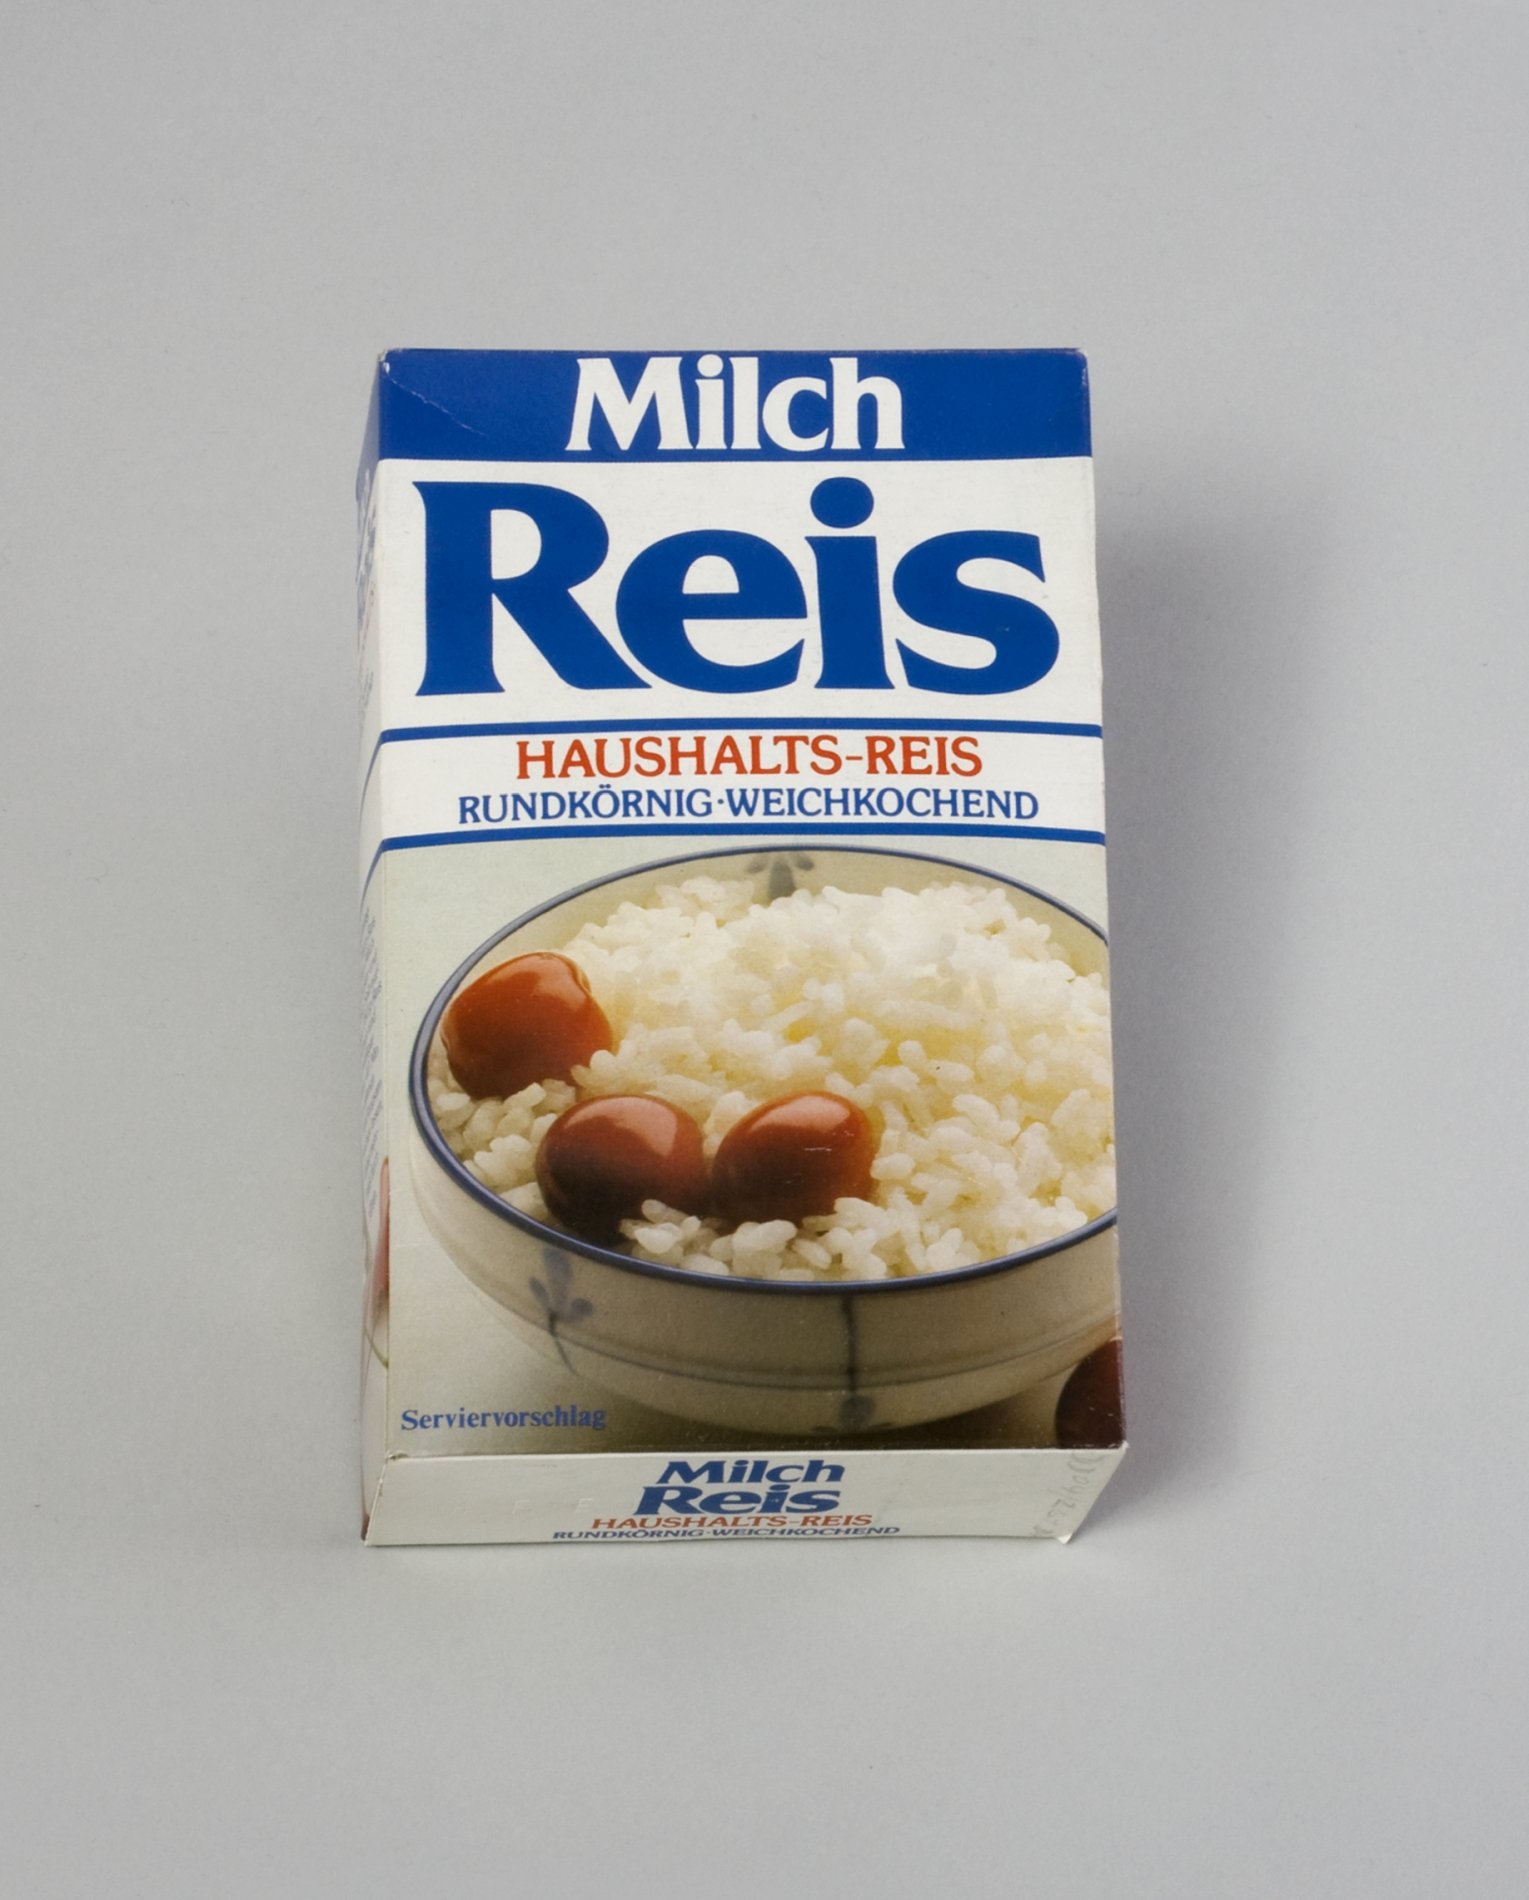 Verpackung "Milch Reis" (Stiftung Domäne Dahlem - Landgut und Museum, Weiternutzung nur mit Genehmigung des Museums CC BY-NC-SA)